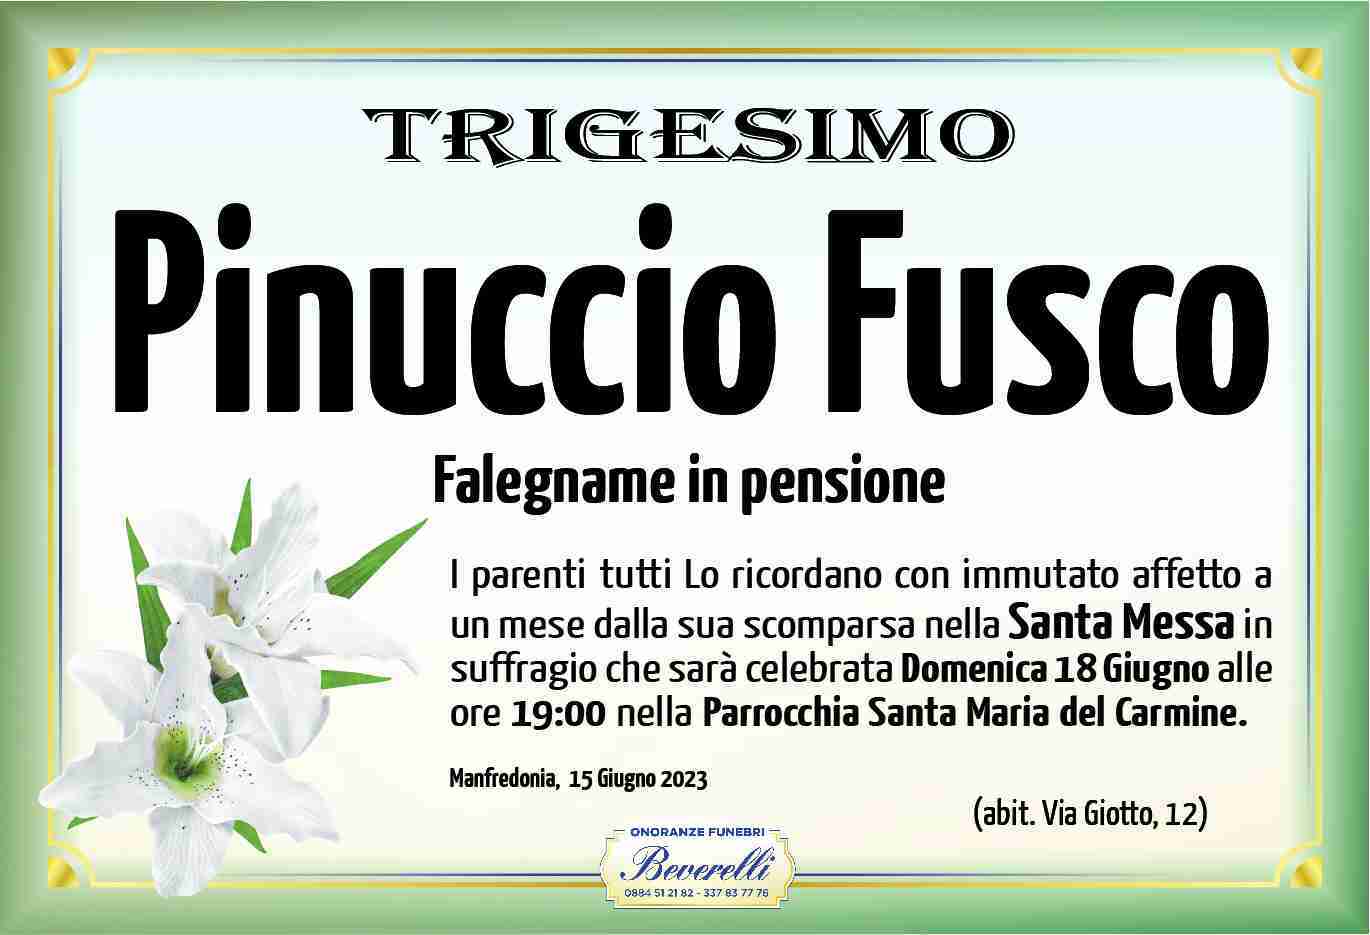 Pinuccio Fusco